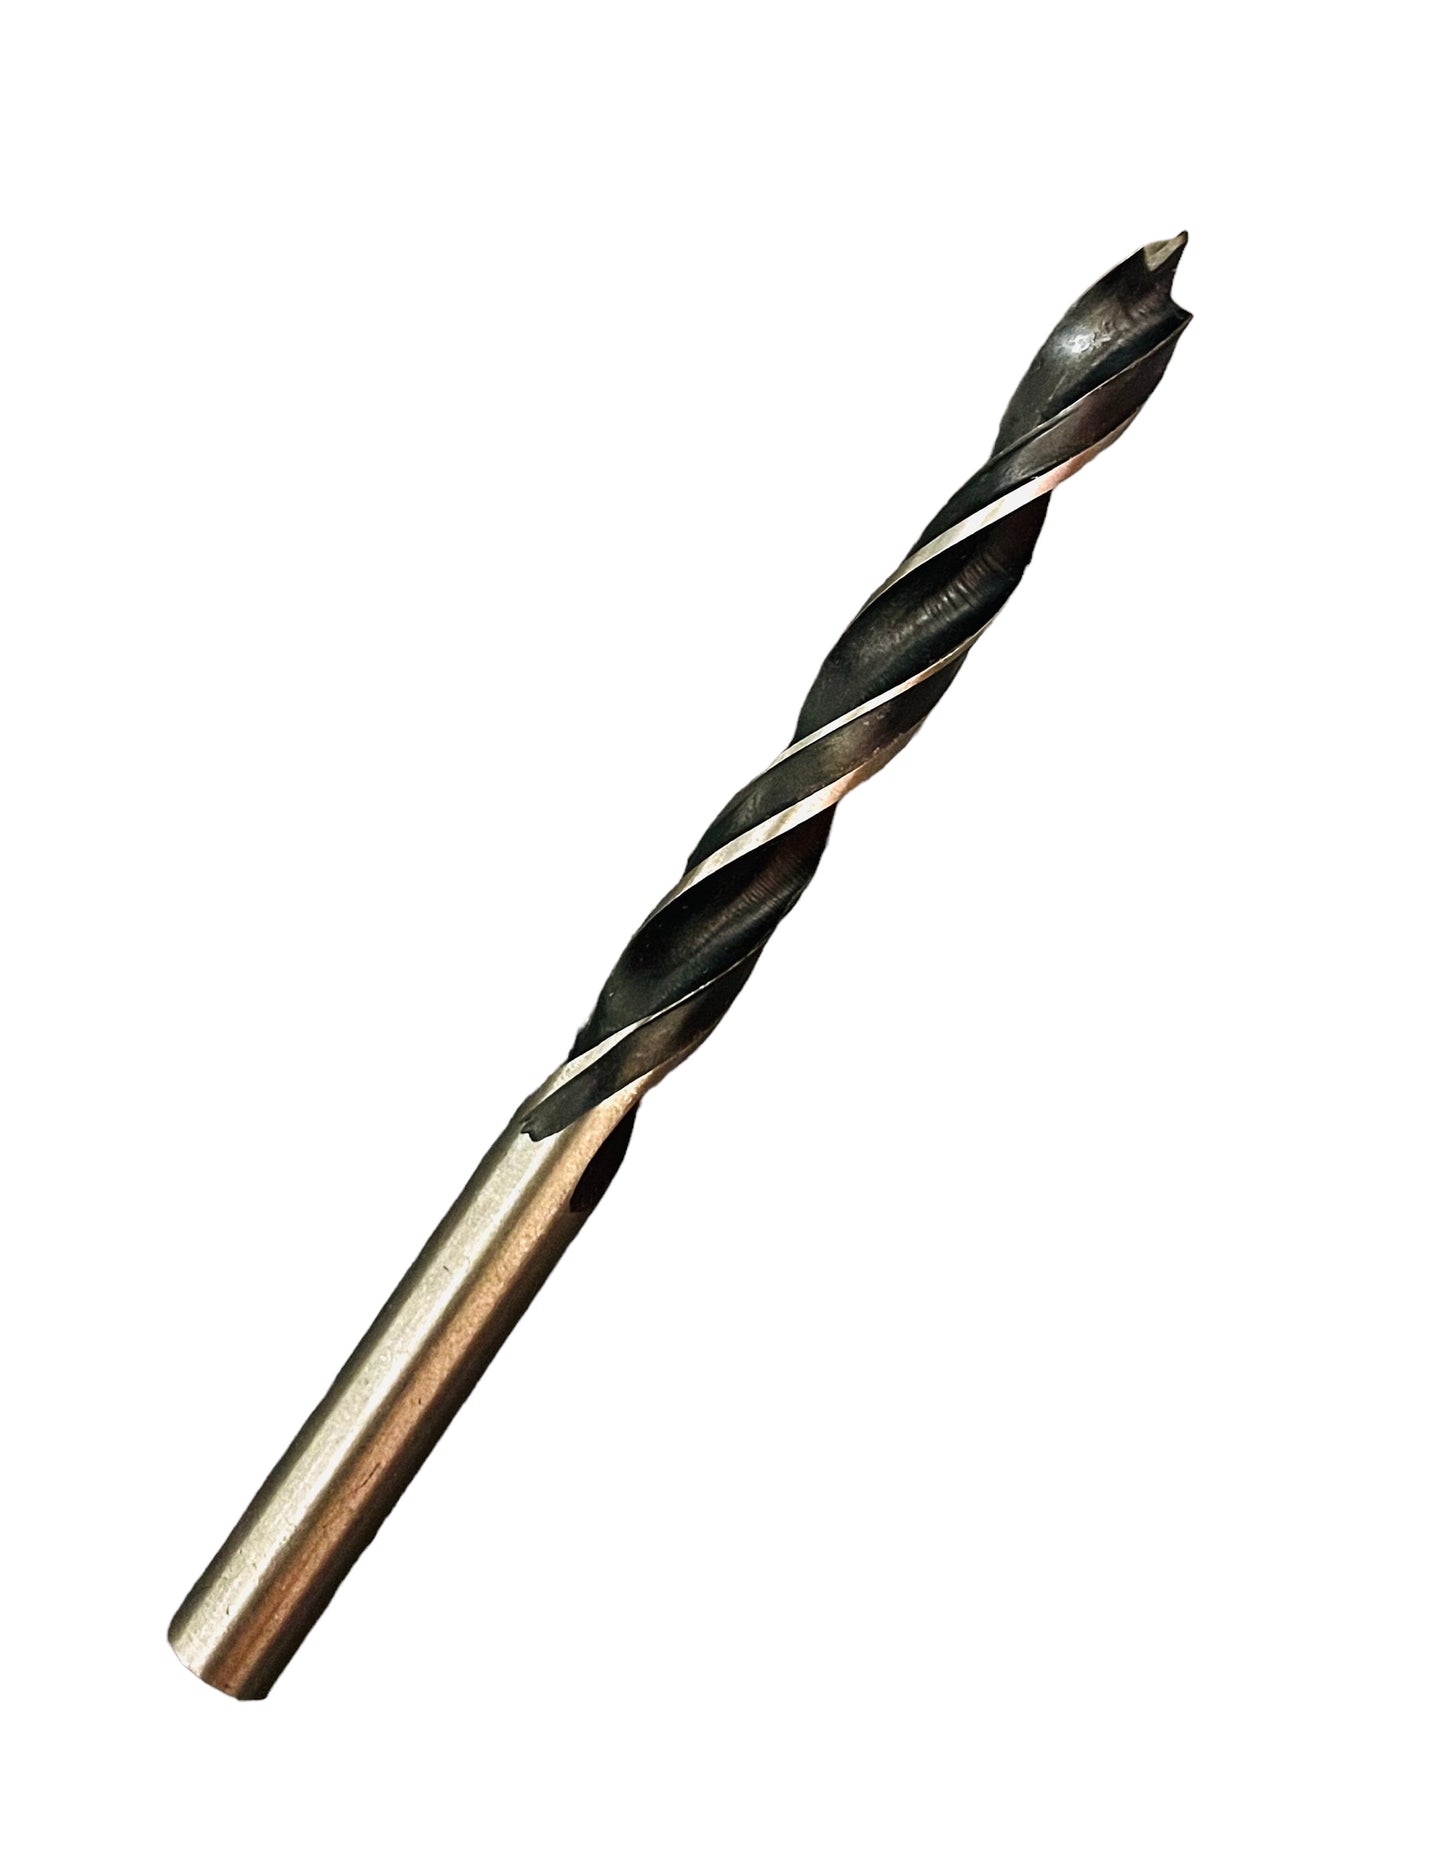 7mm drill brad point drillbit